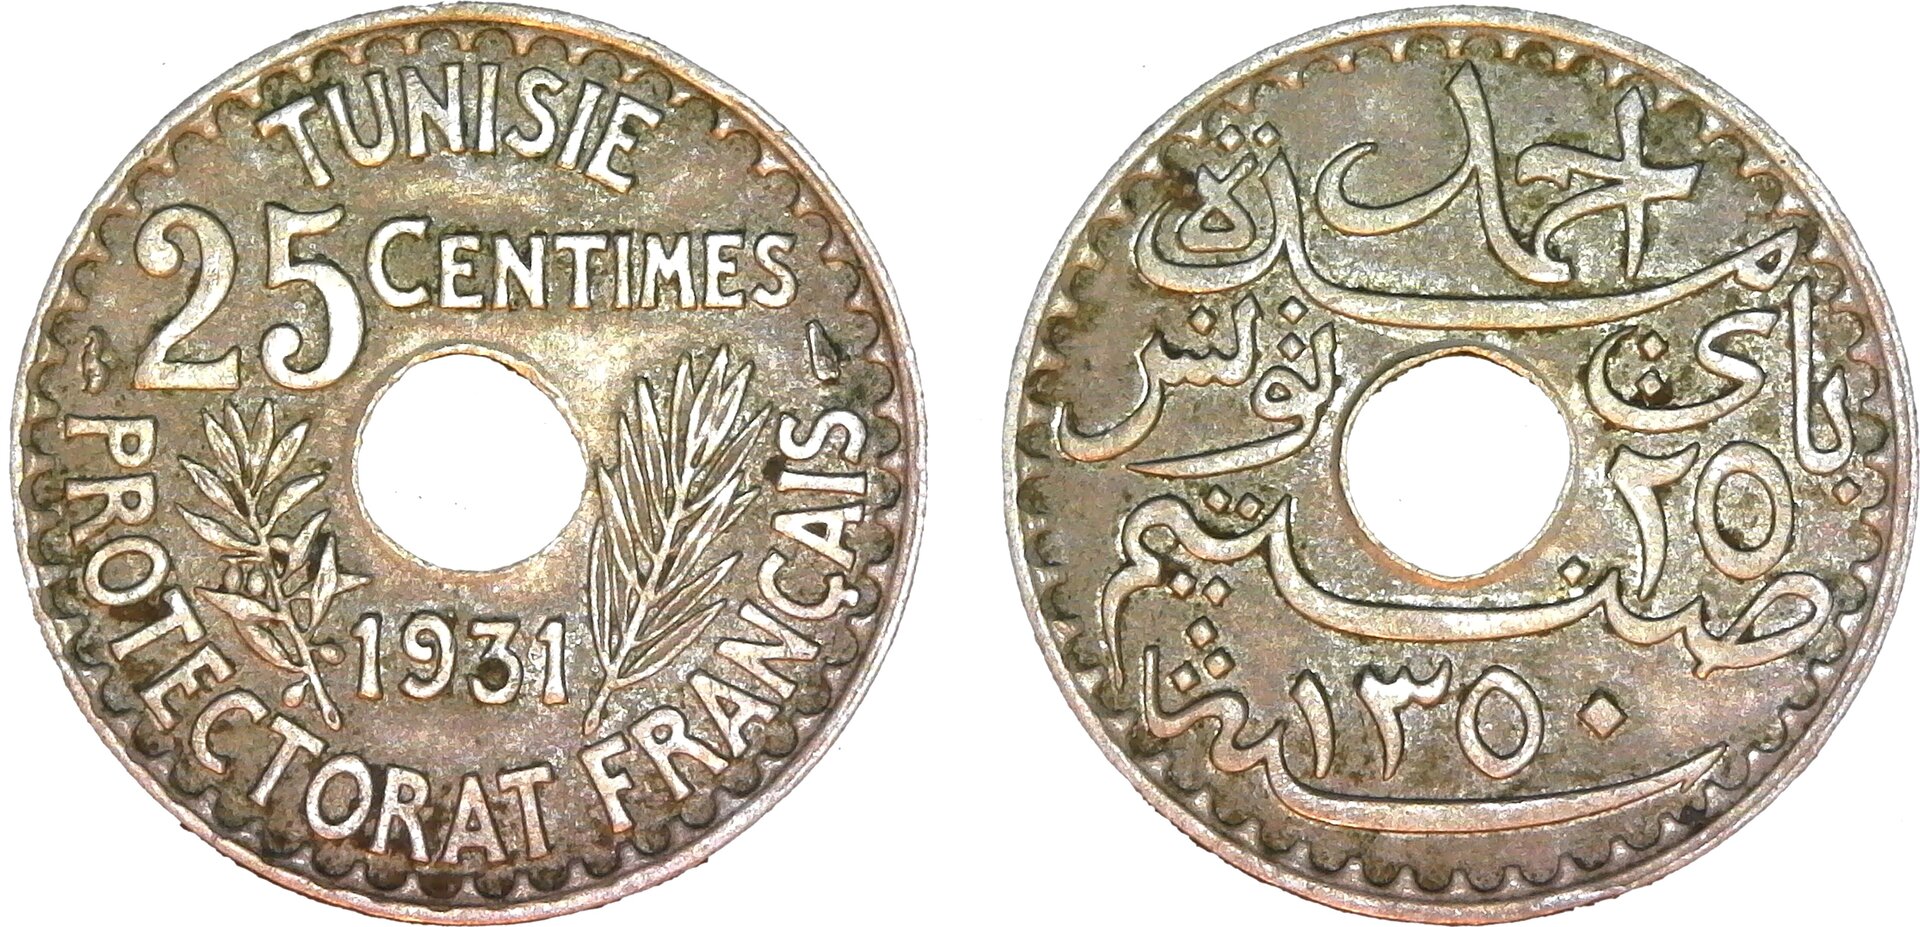 Tunisia 25 Centimes - Ahmad II 1931 obv-side-cutout.jpg